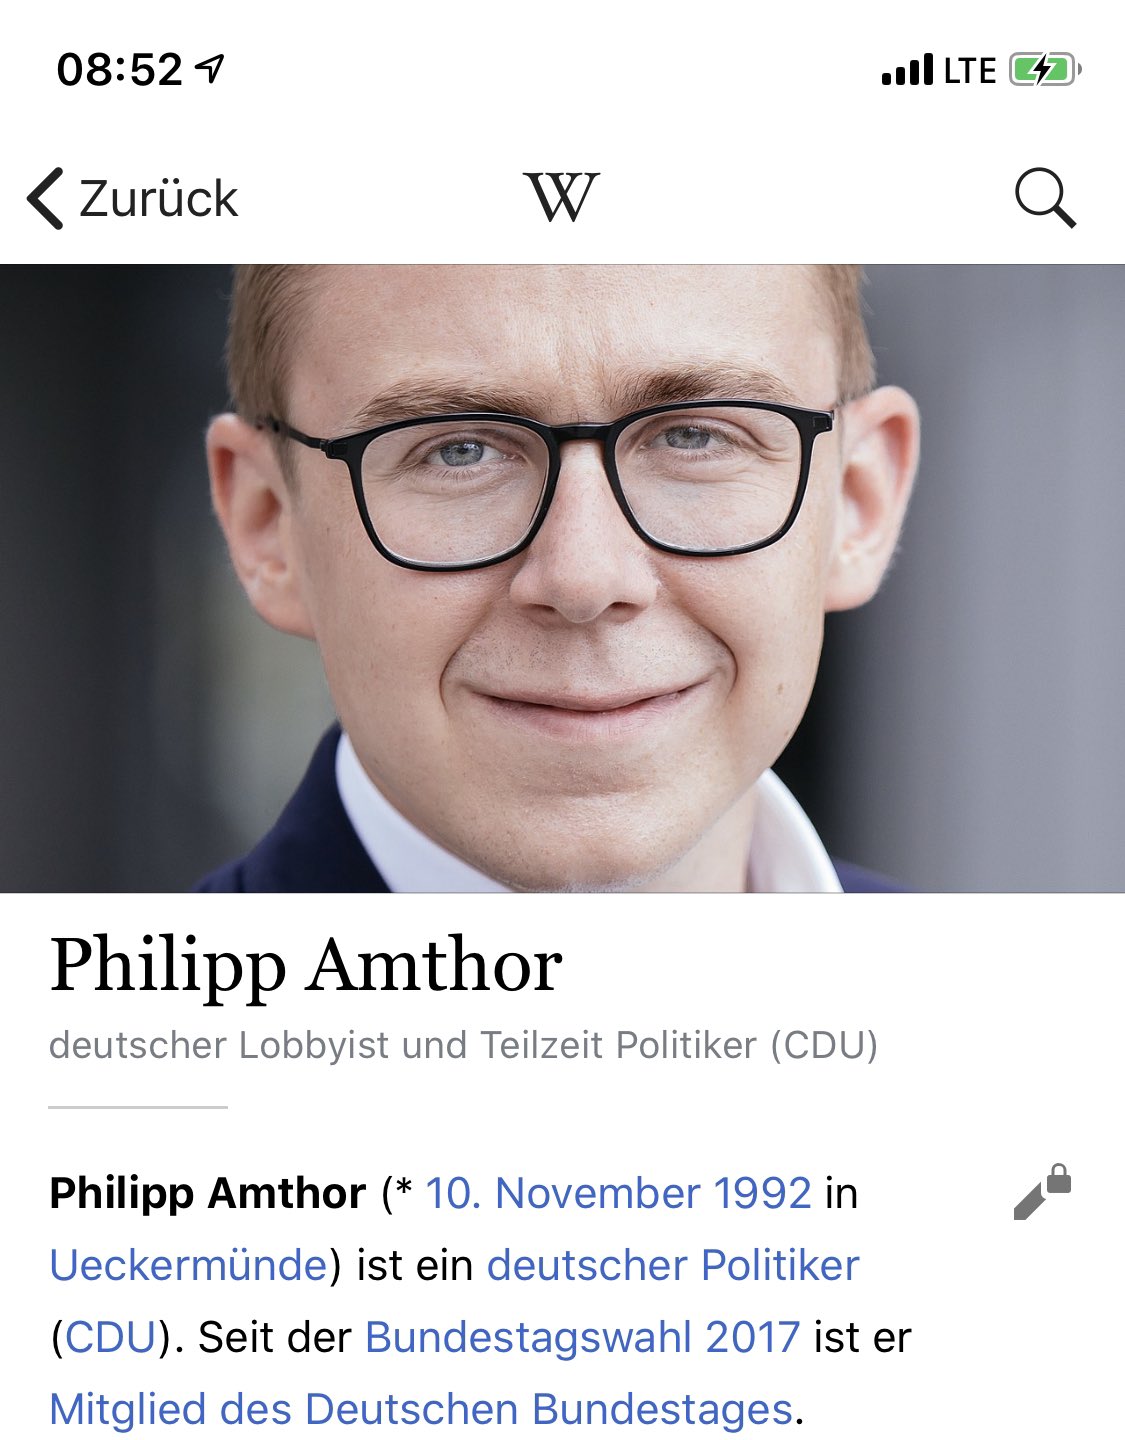 Das Netz reagiert sofort: Hier ein kurzzeitiger Wikipedia-Eintrag über Philipp Amthor